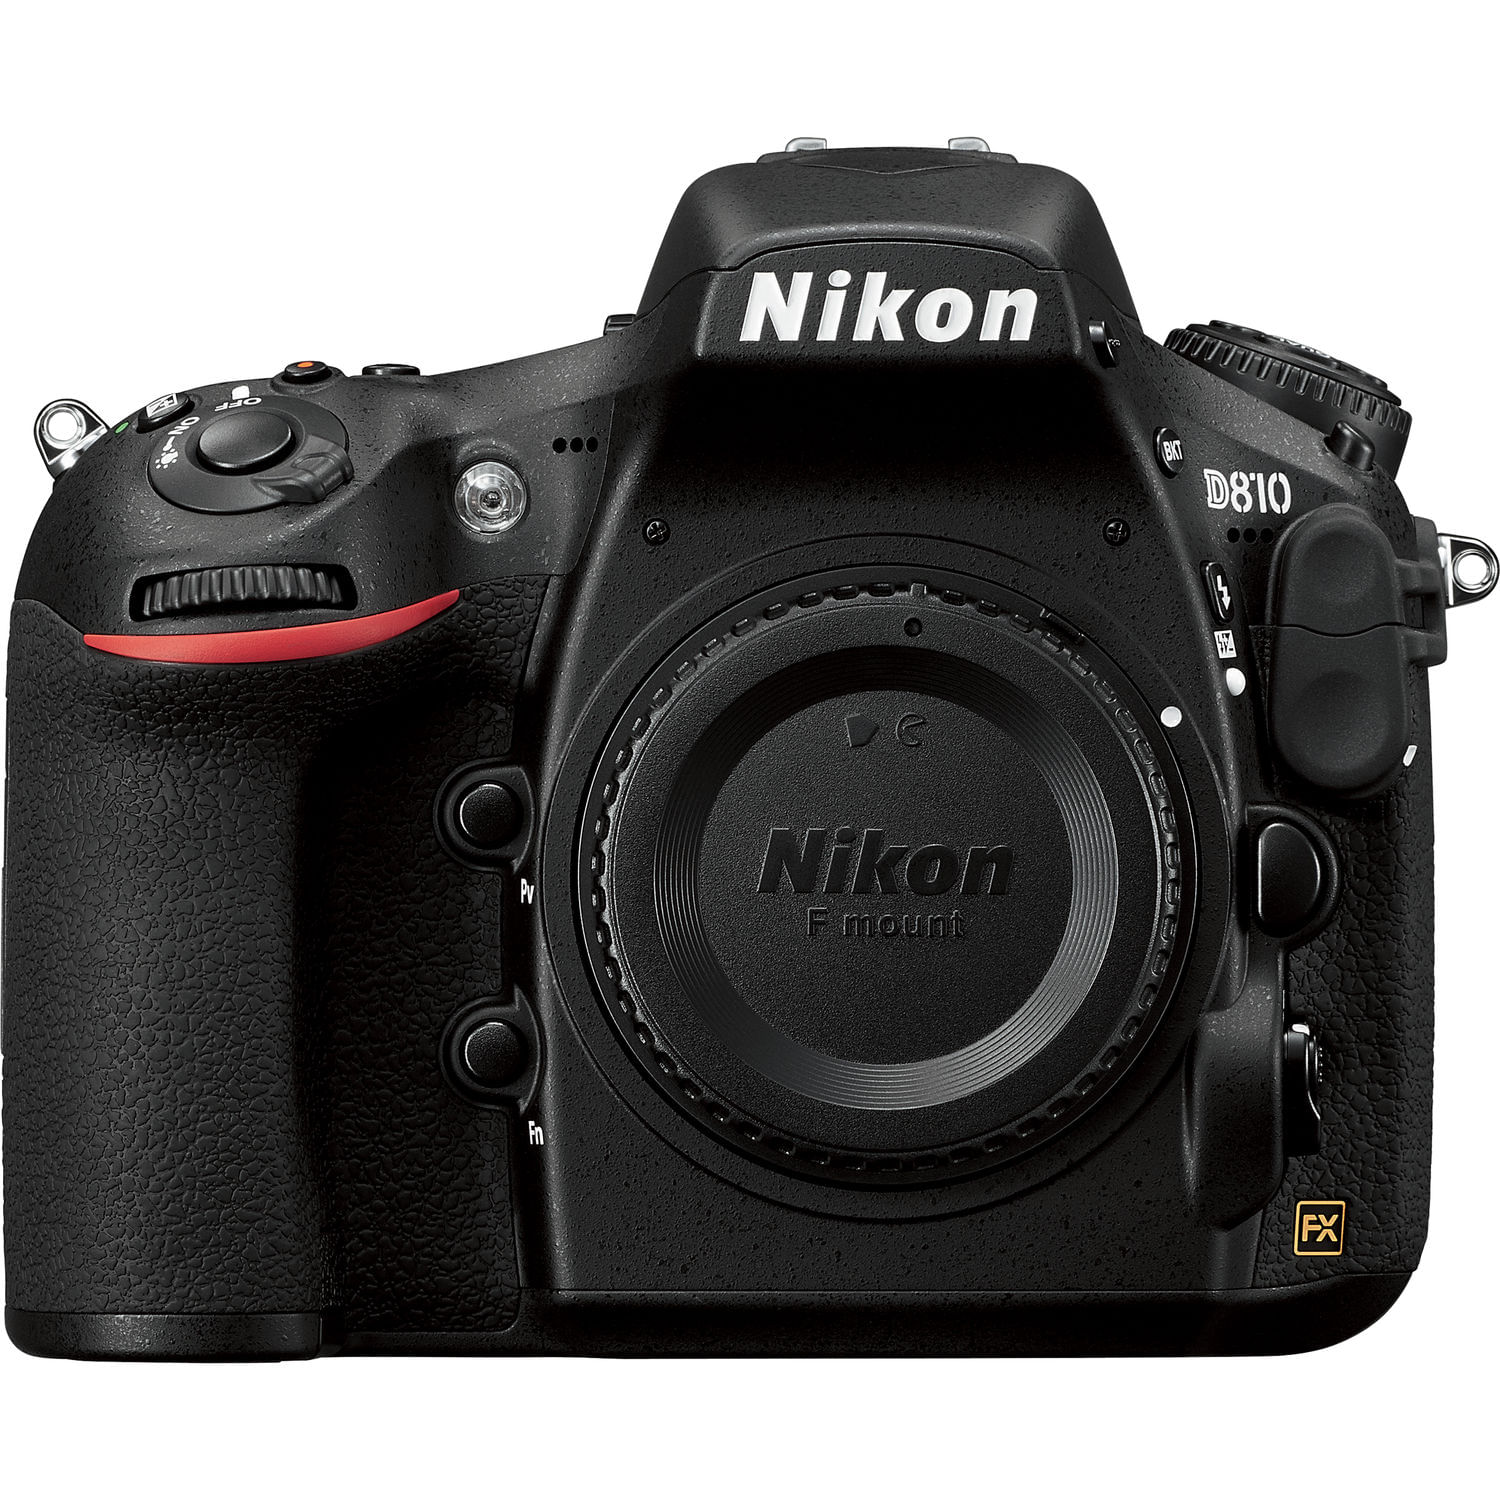 Cámara Dslr Nikon D810 Solo Cuerpo Reacondicionada por Nikon Usa